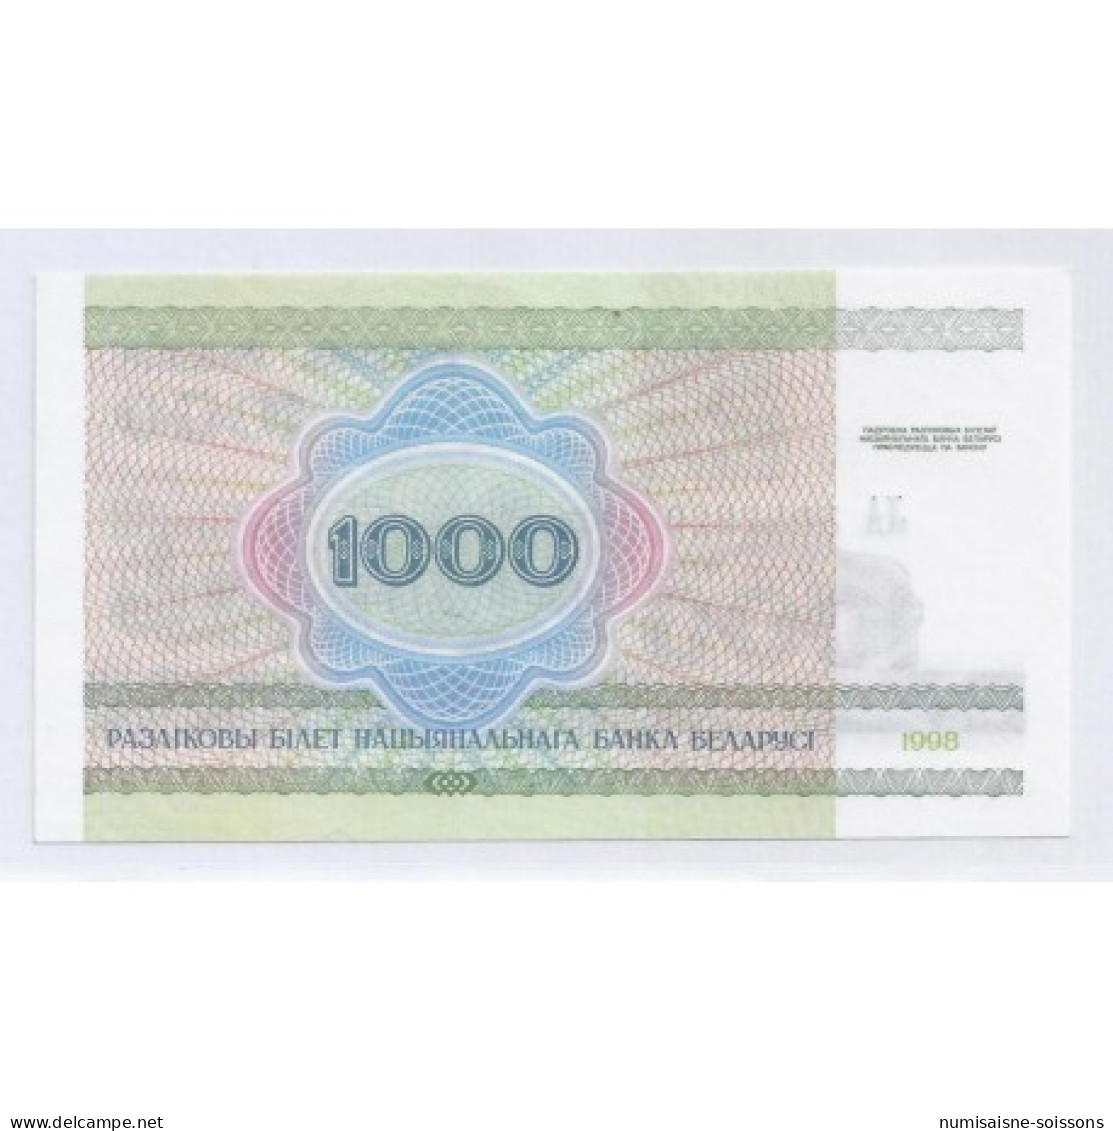 BIELORUSSIE - PICK 16 - 1 000 RUBLEI 1998 - NEUF - Belarus